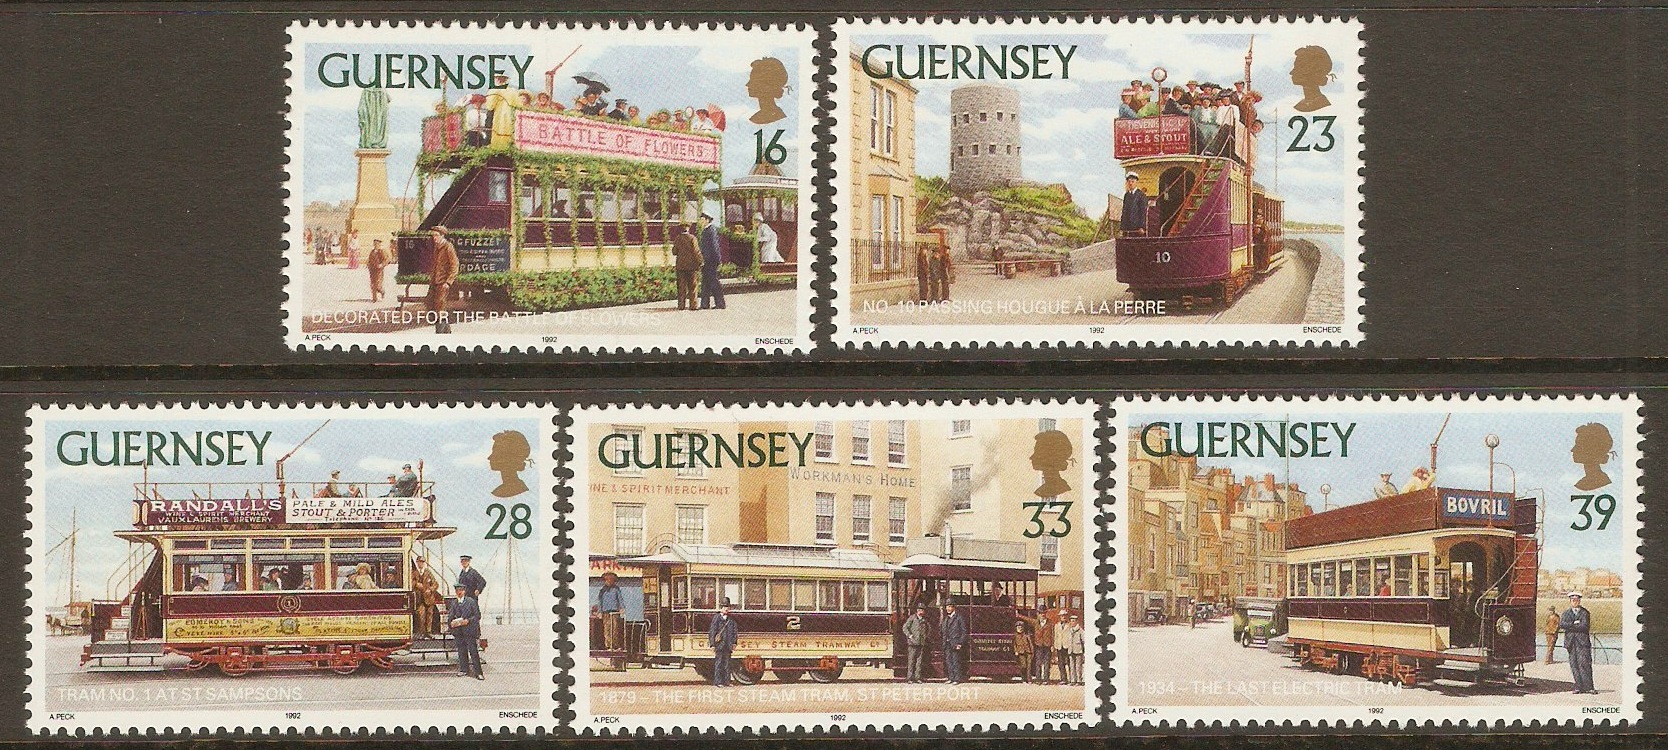 Guernsey 1992 Trams set. SG588-SG592.